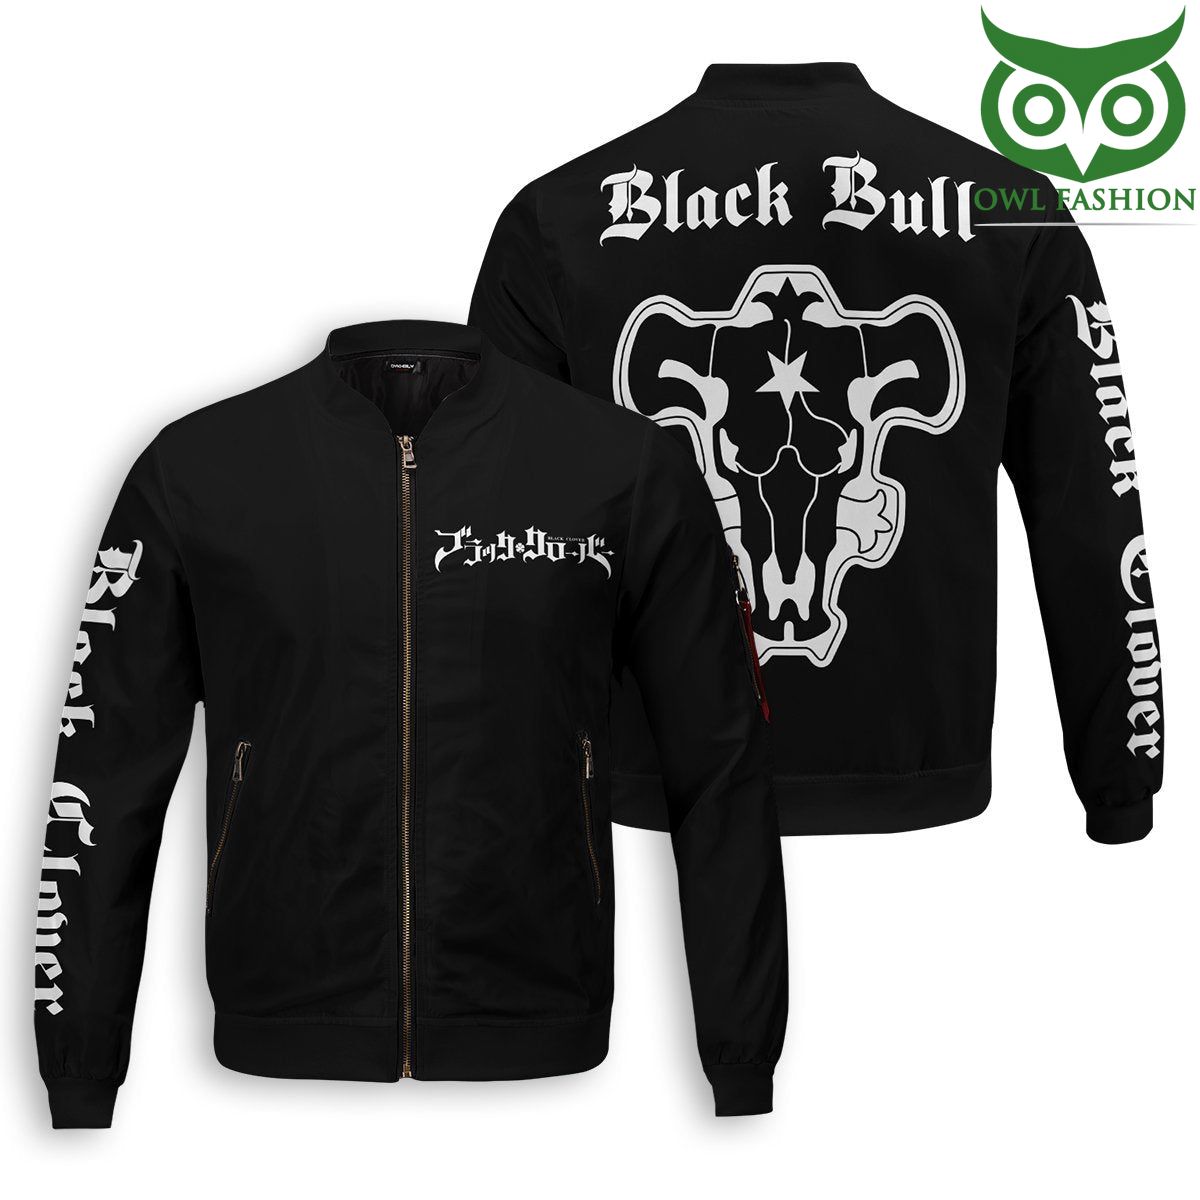 456 Black Bull Printed Bomber Jacket for fans